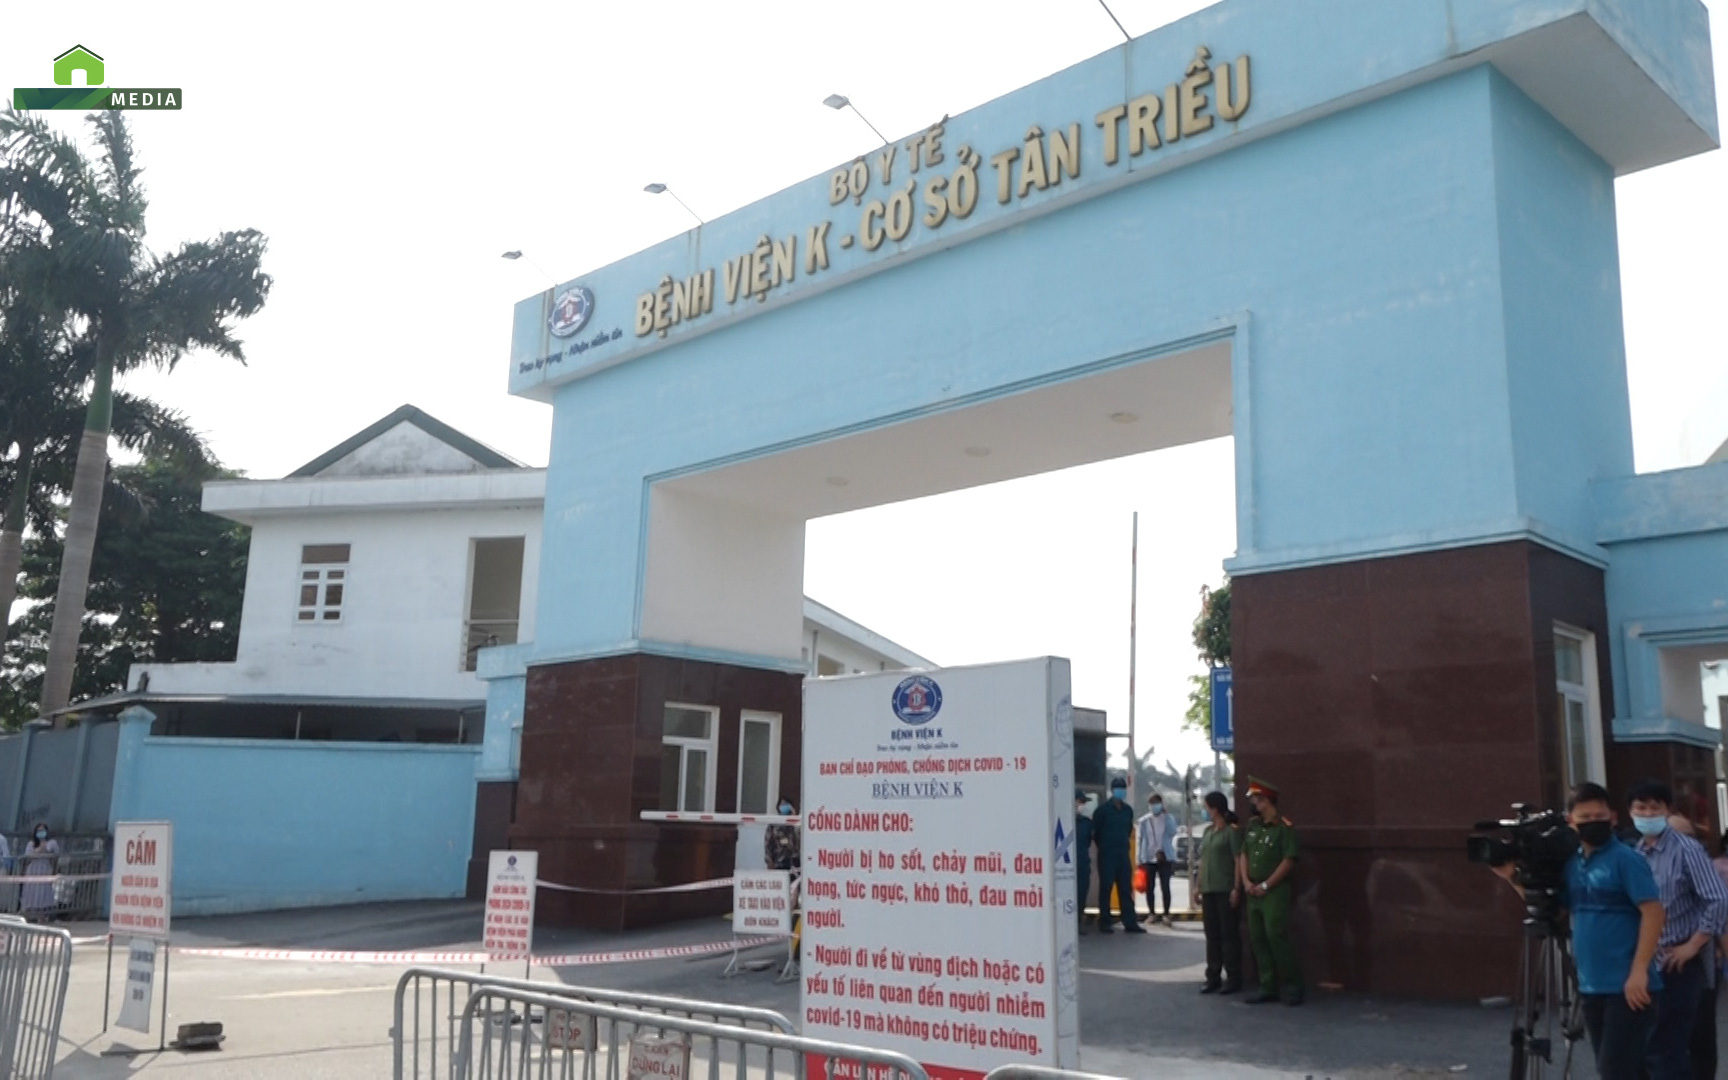 
Chủ tịch UBND Hà Nội trực tiếp đến Bệnh viện K giám sát công tác phong tỏa vì Covid-19